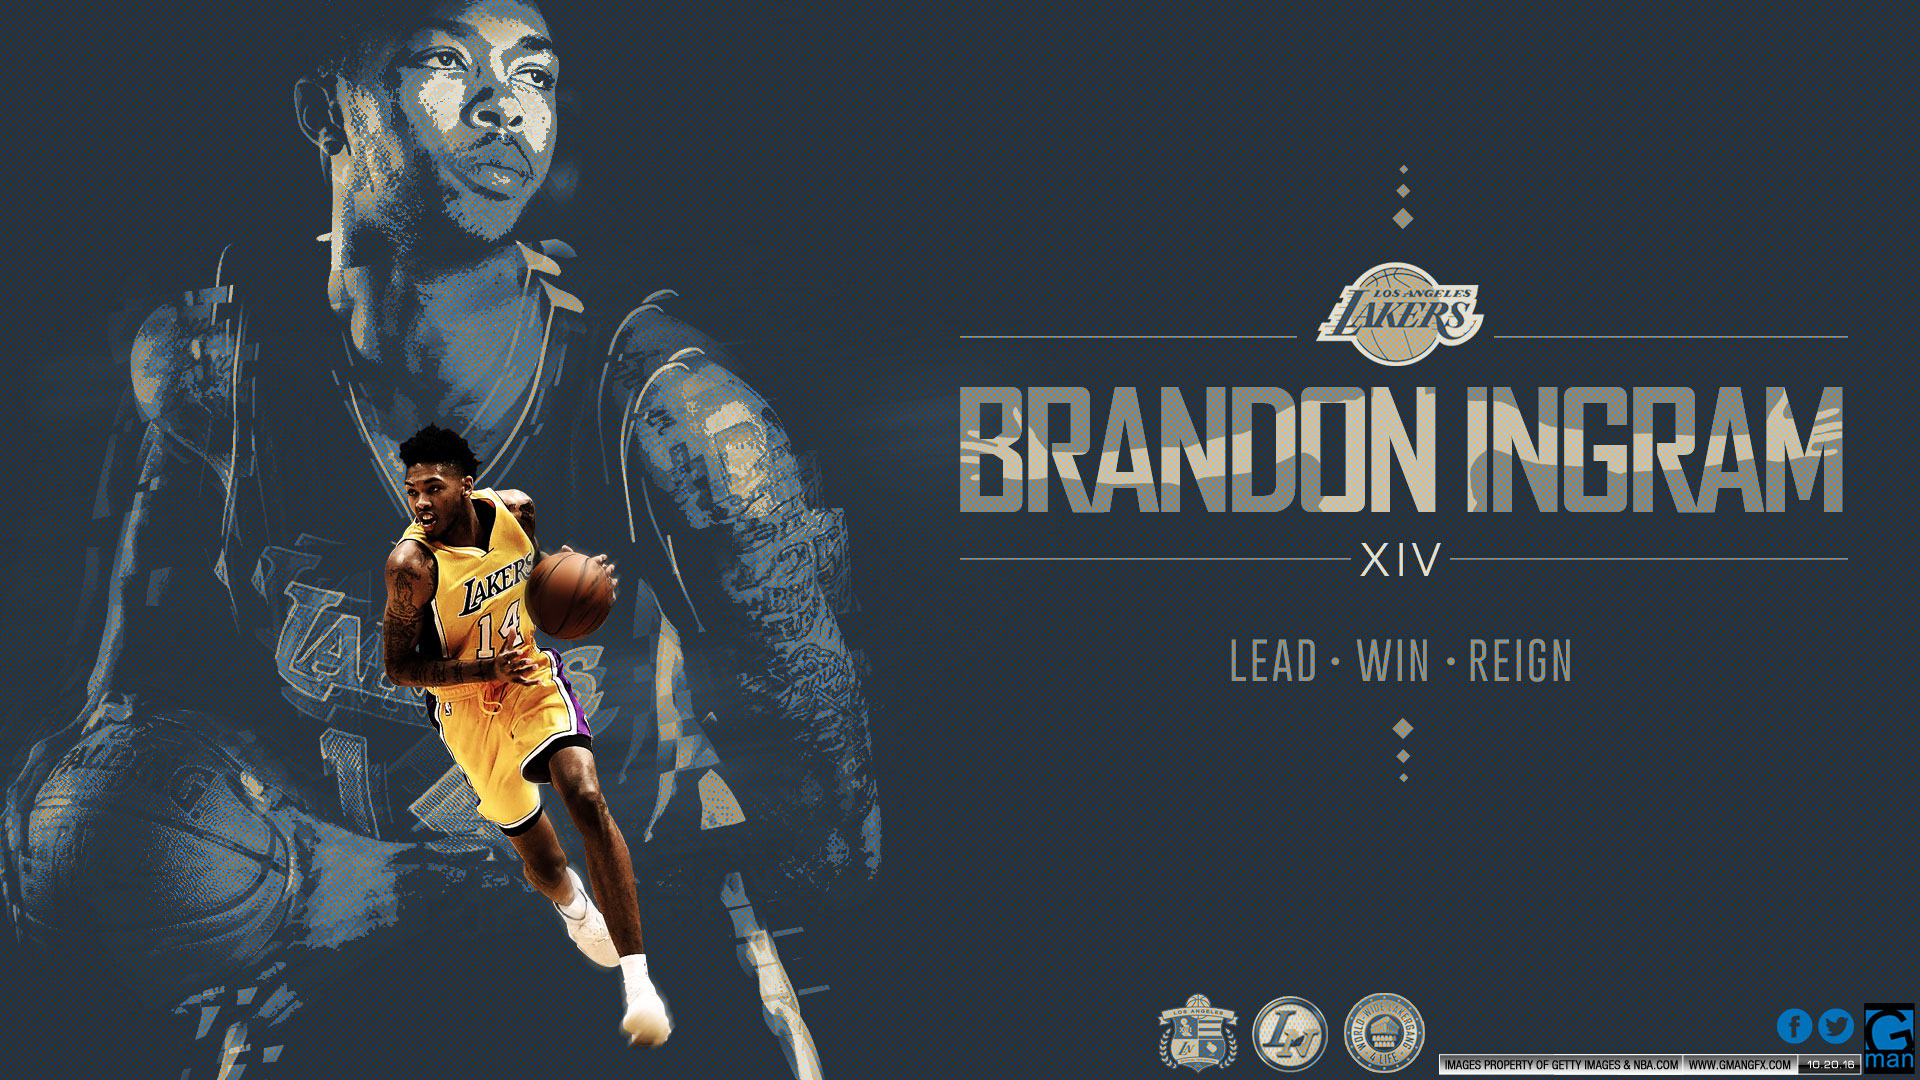 Brandon Ingram Lakers Wallpaper